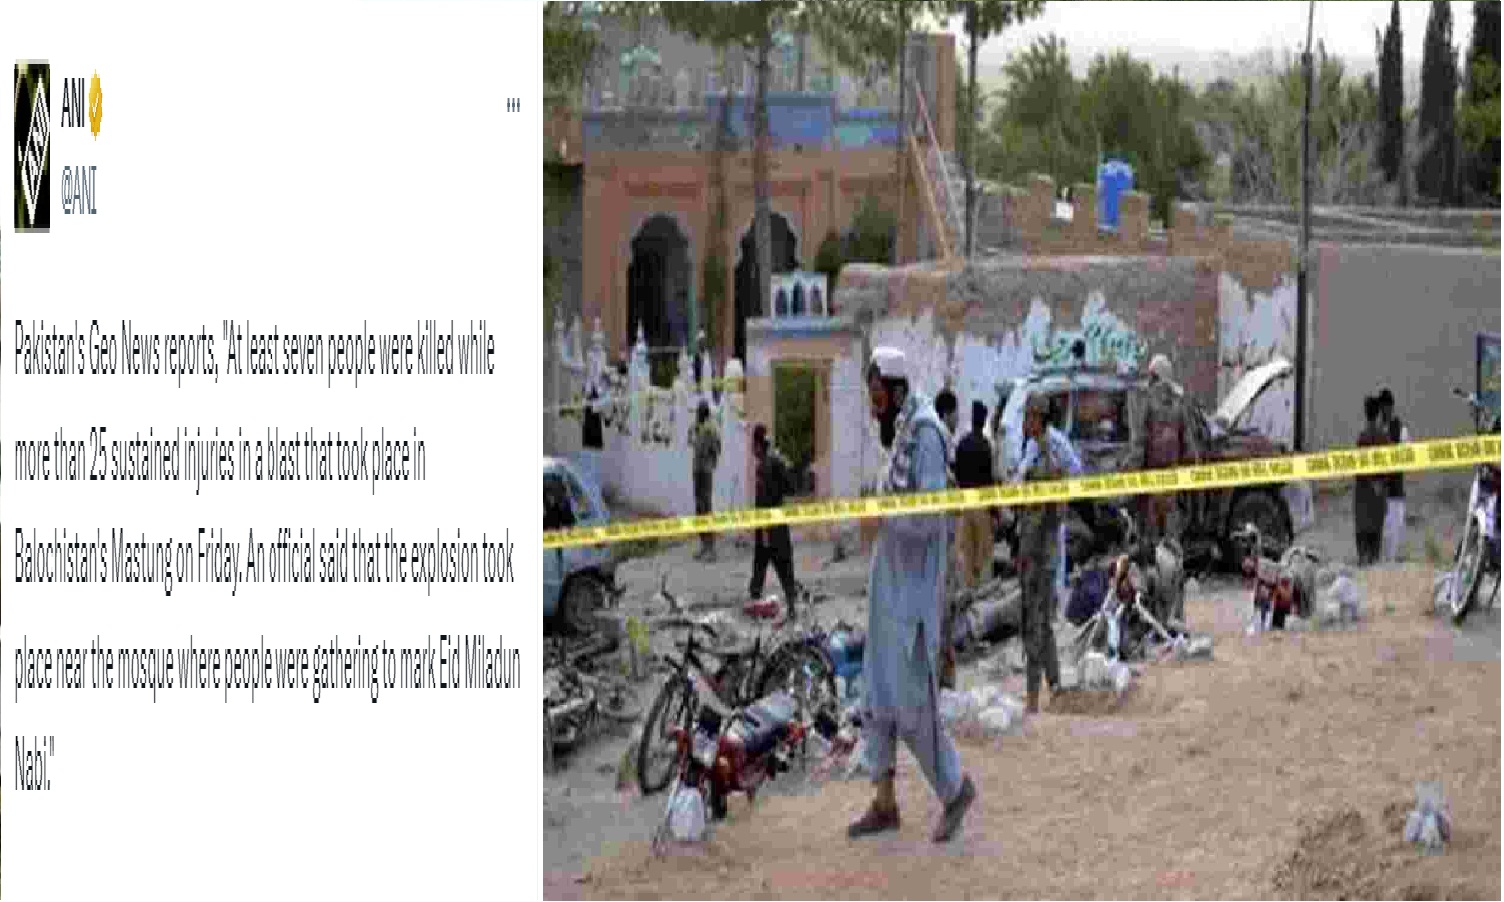 #BREAKING: பாகிஸ்தானில் மசூதி அருகே குண்டு வெடிப்பு; 7 பேர் பலியானதாக தகவல்!!